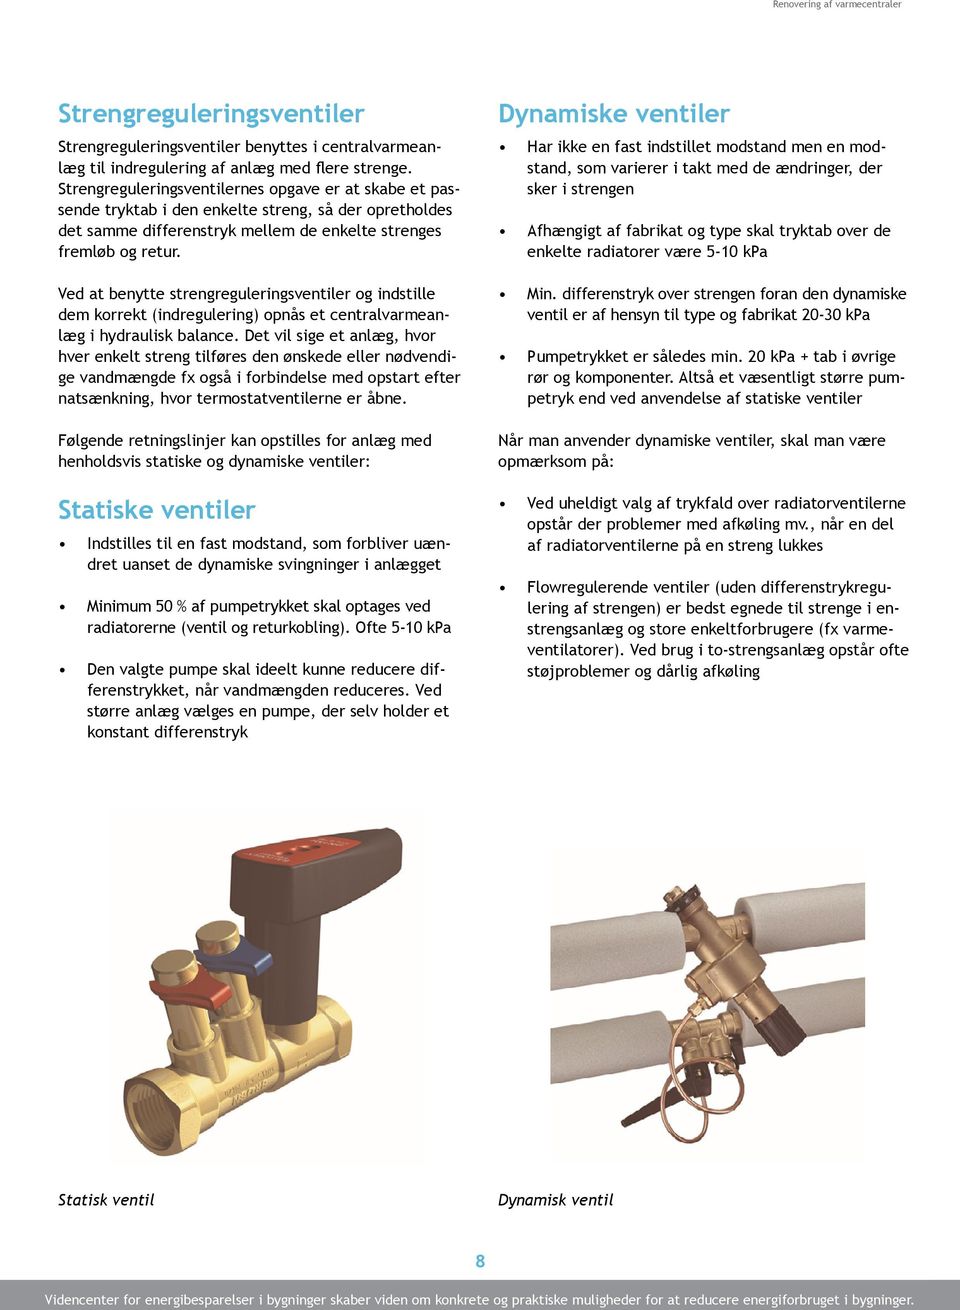 Ved at benytte strengreguleringsventiler og indstille dem korrekt (indregulering) opnås et centralvarmeanlæg i hydraulisk balance.